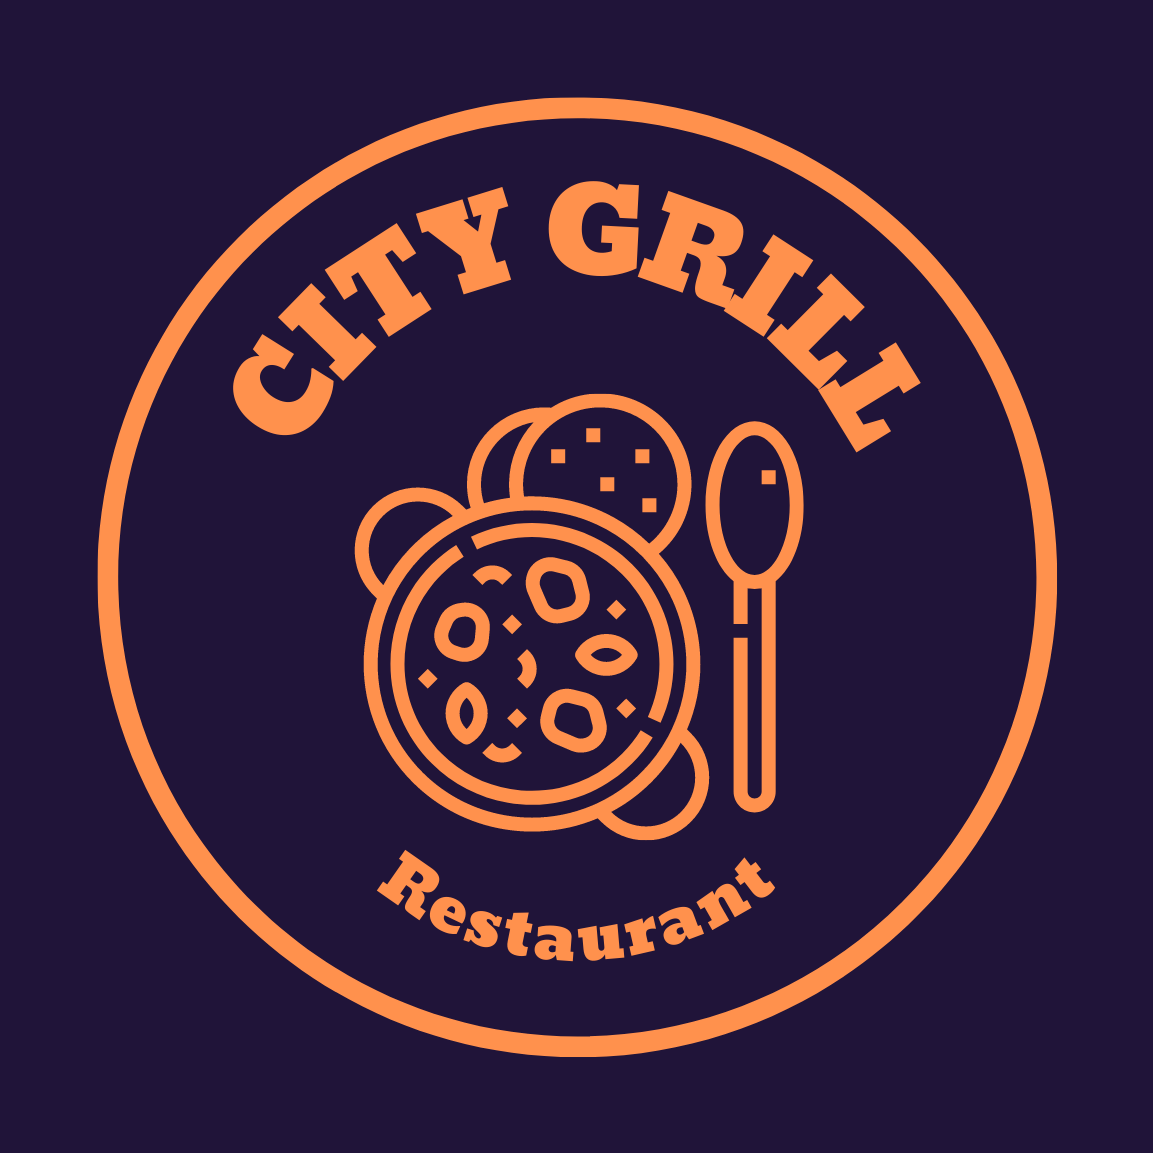 City Grill Dubai